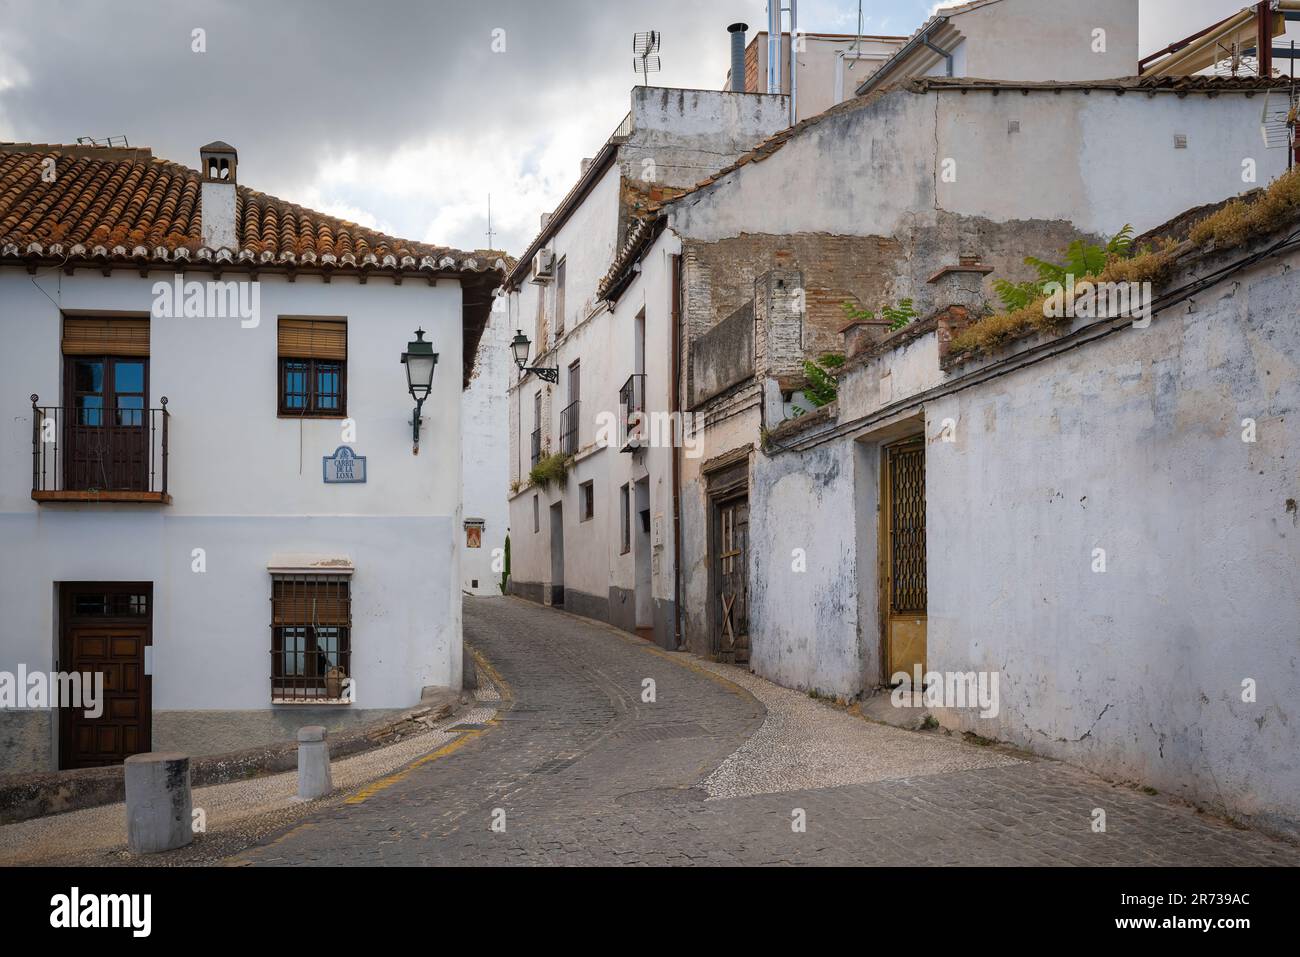 Carril de la Lona Street of traditional Albaicin district - Granada, Andalusia, Spain Stock Photo